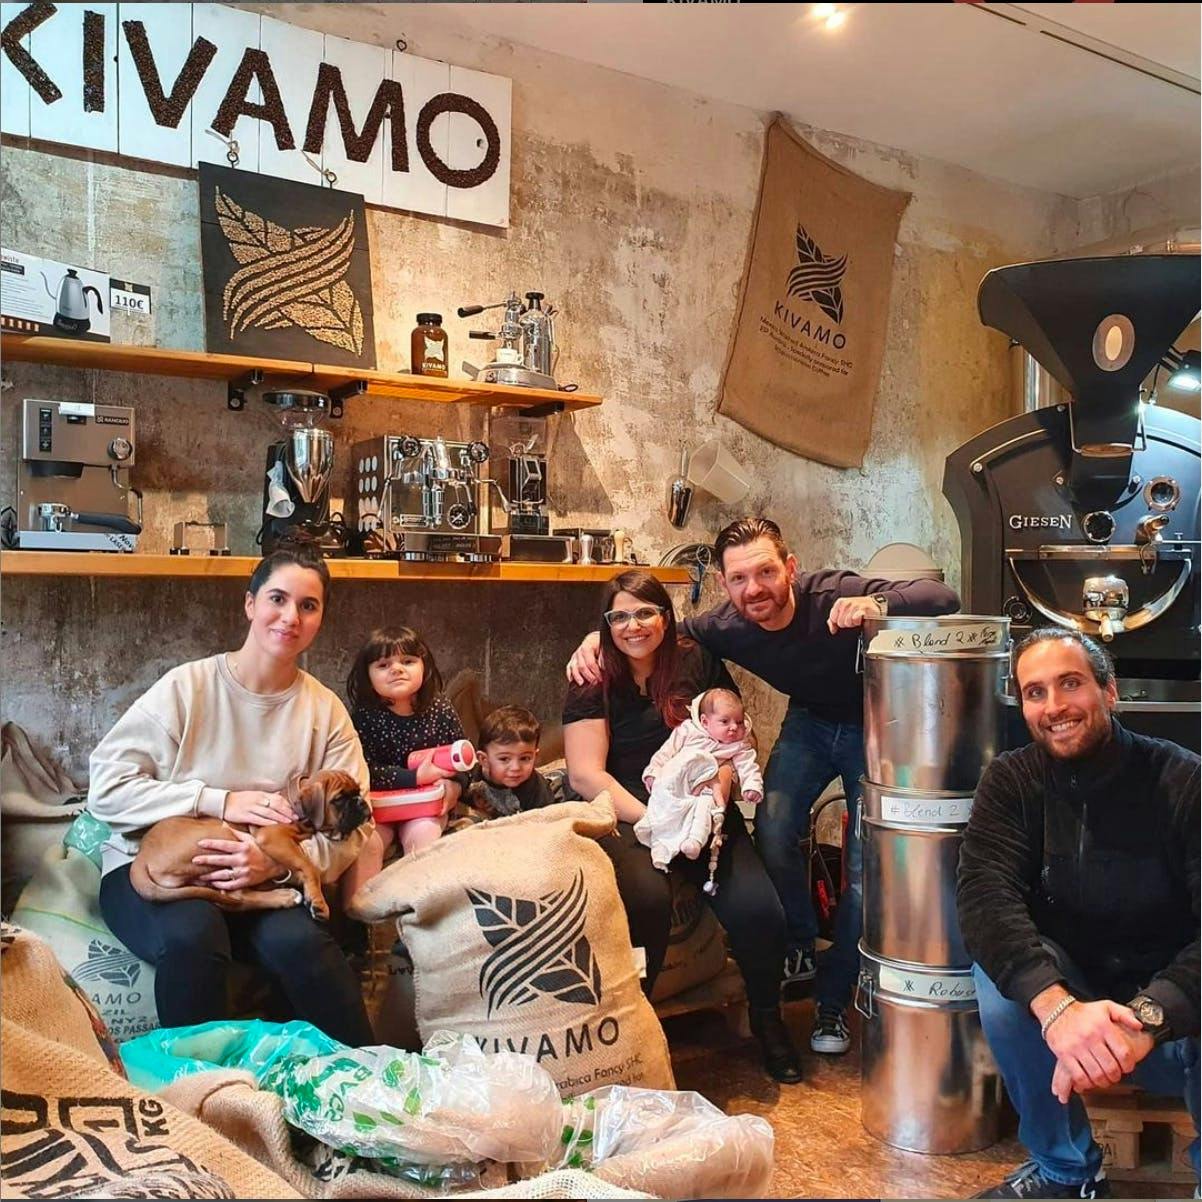 Ein Foto von den Kivamo-Inhabern und deren Familien als Beispiel für gutes Brand Management